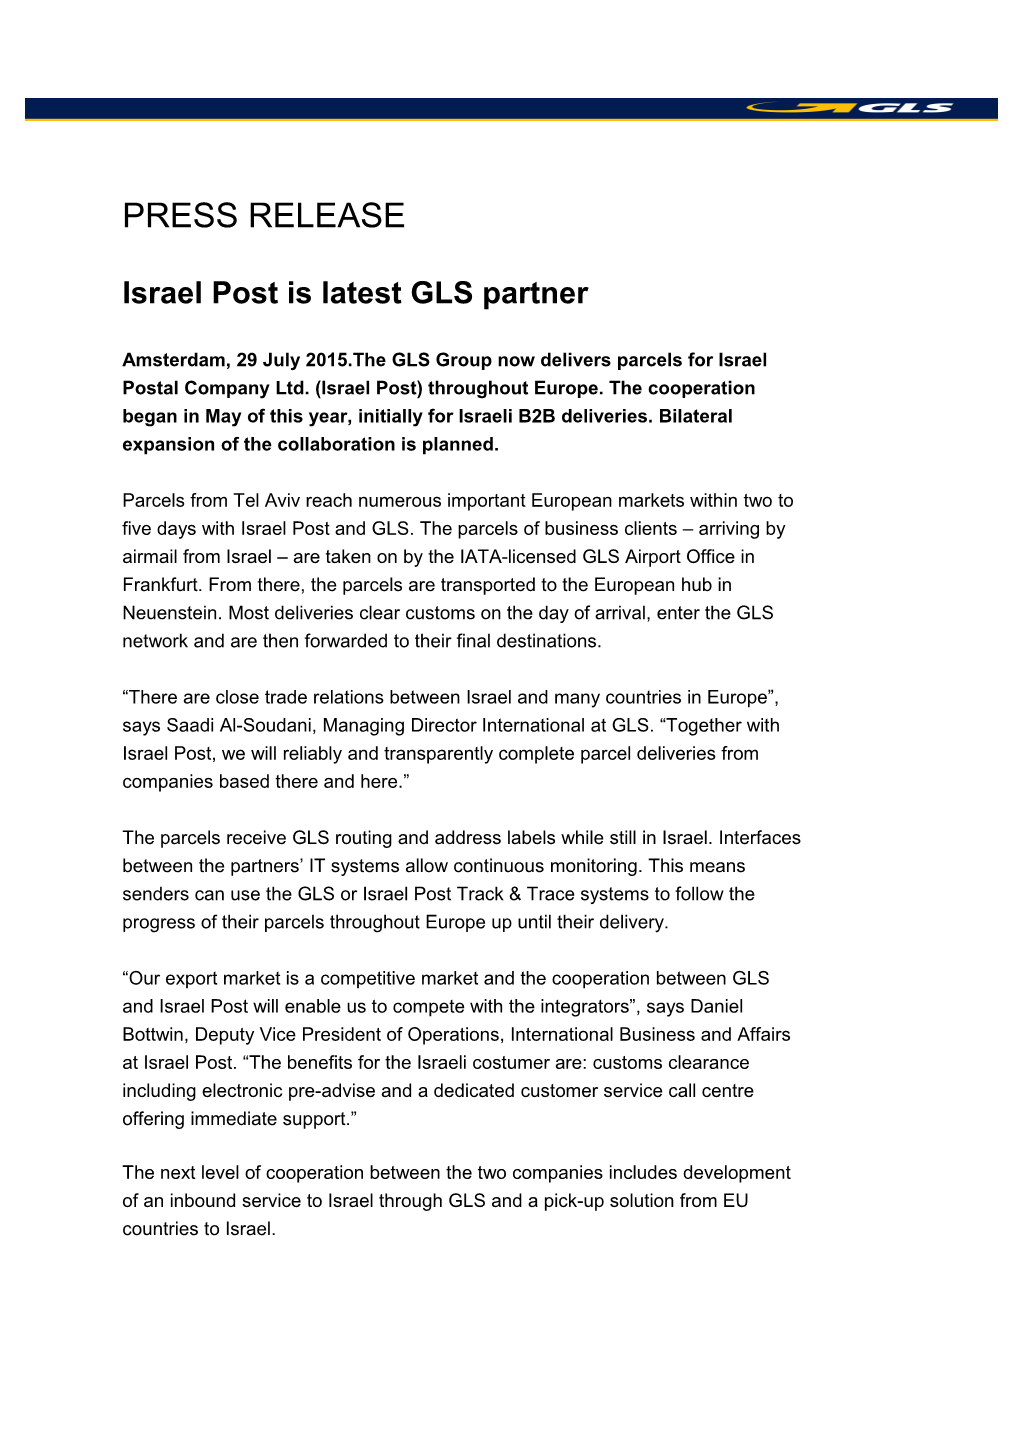 Israelpost Is Latest GLS Partner